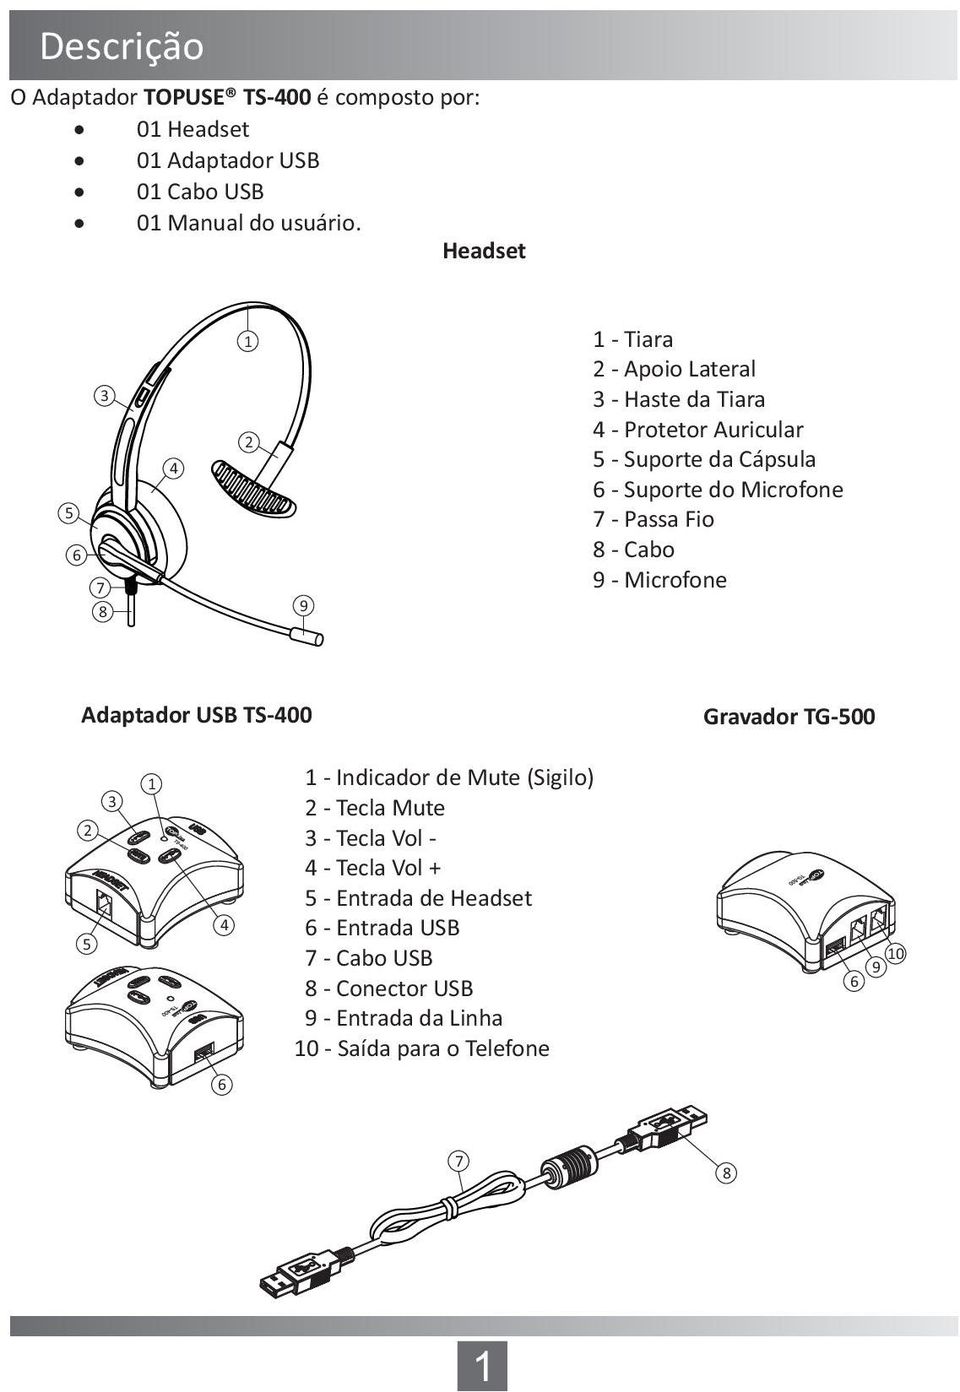 Microfone 7 - Passa Fio 8 - Cabo 9 - Microfone Adaptador USB TS-400 Gravador TG-500 2 5 3 1 4 1 - Indicador de Mute (Sigilo) 2 - Tecla